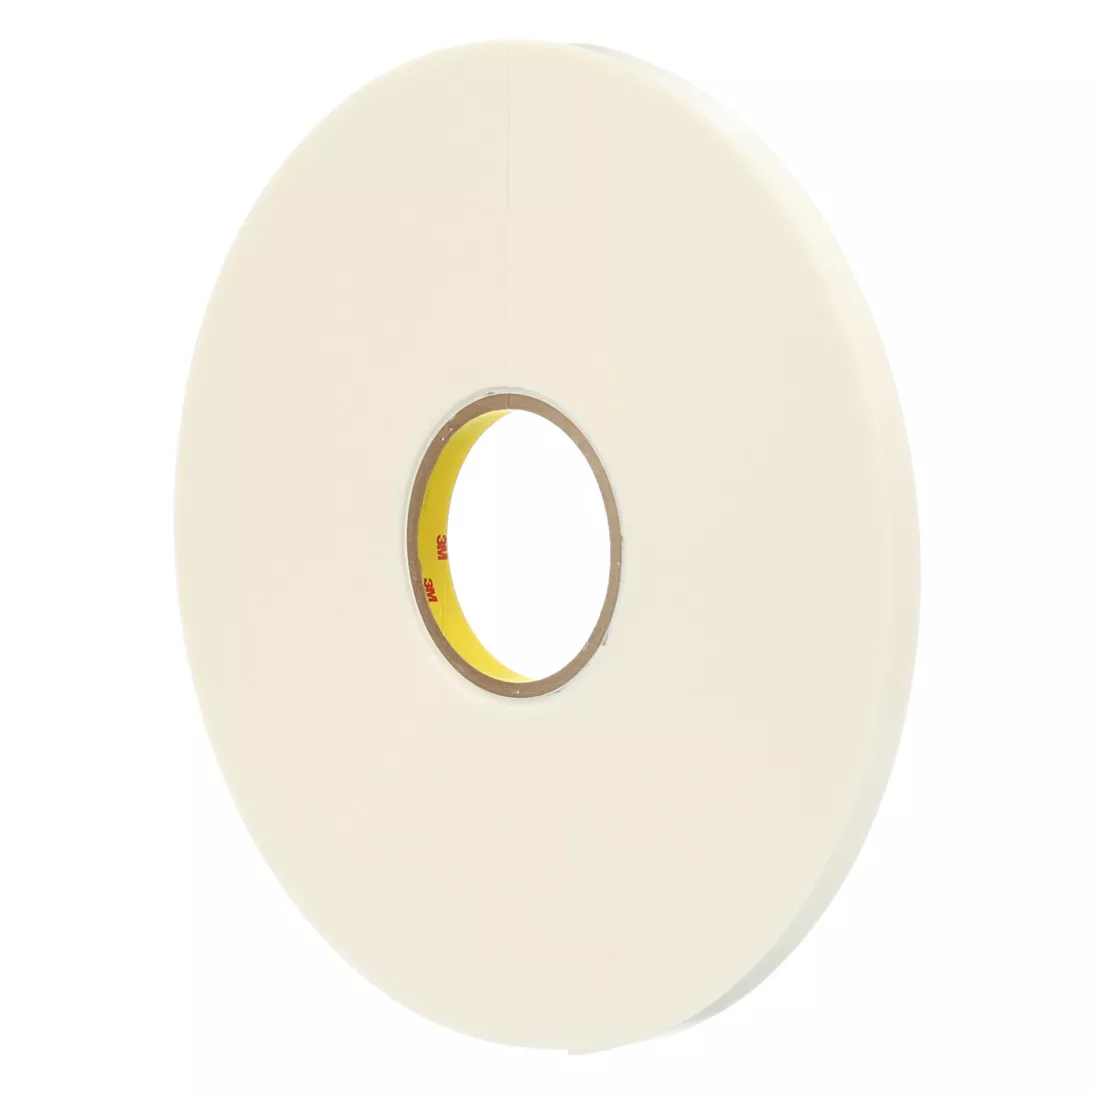 3M™ Double Coated Polyethylene Foam Tape 4466, White, 1/4 in x 36 yd, 62
mil, 36 rolls per case